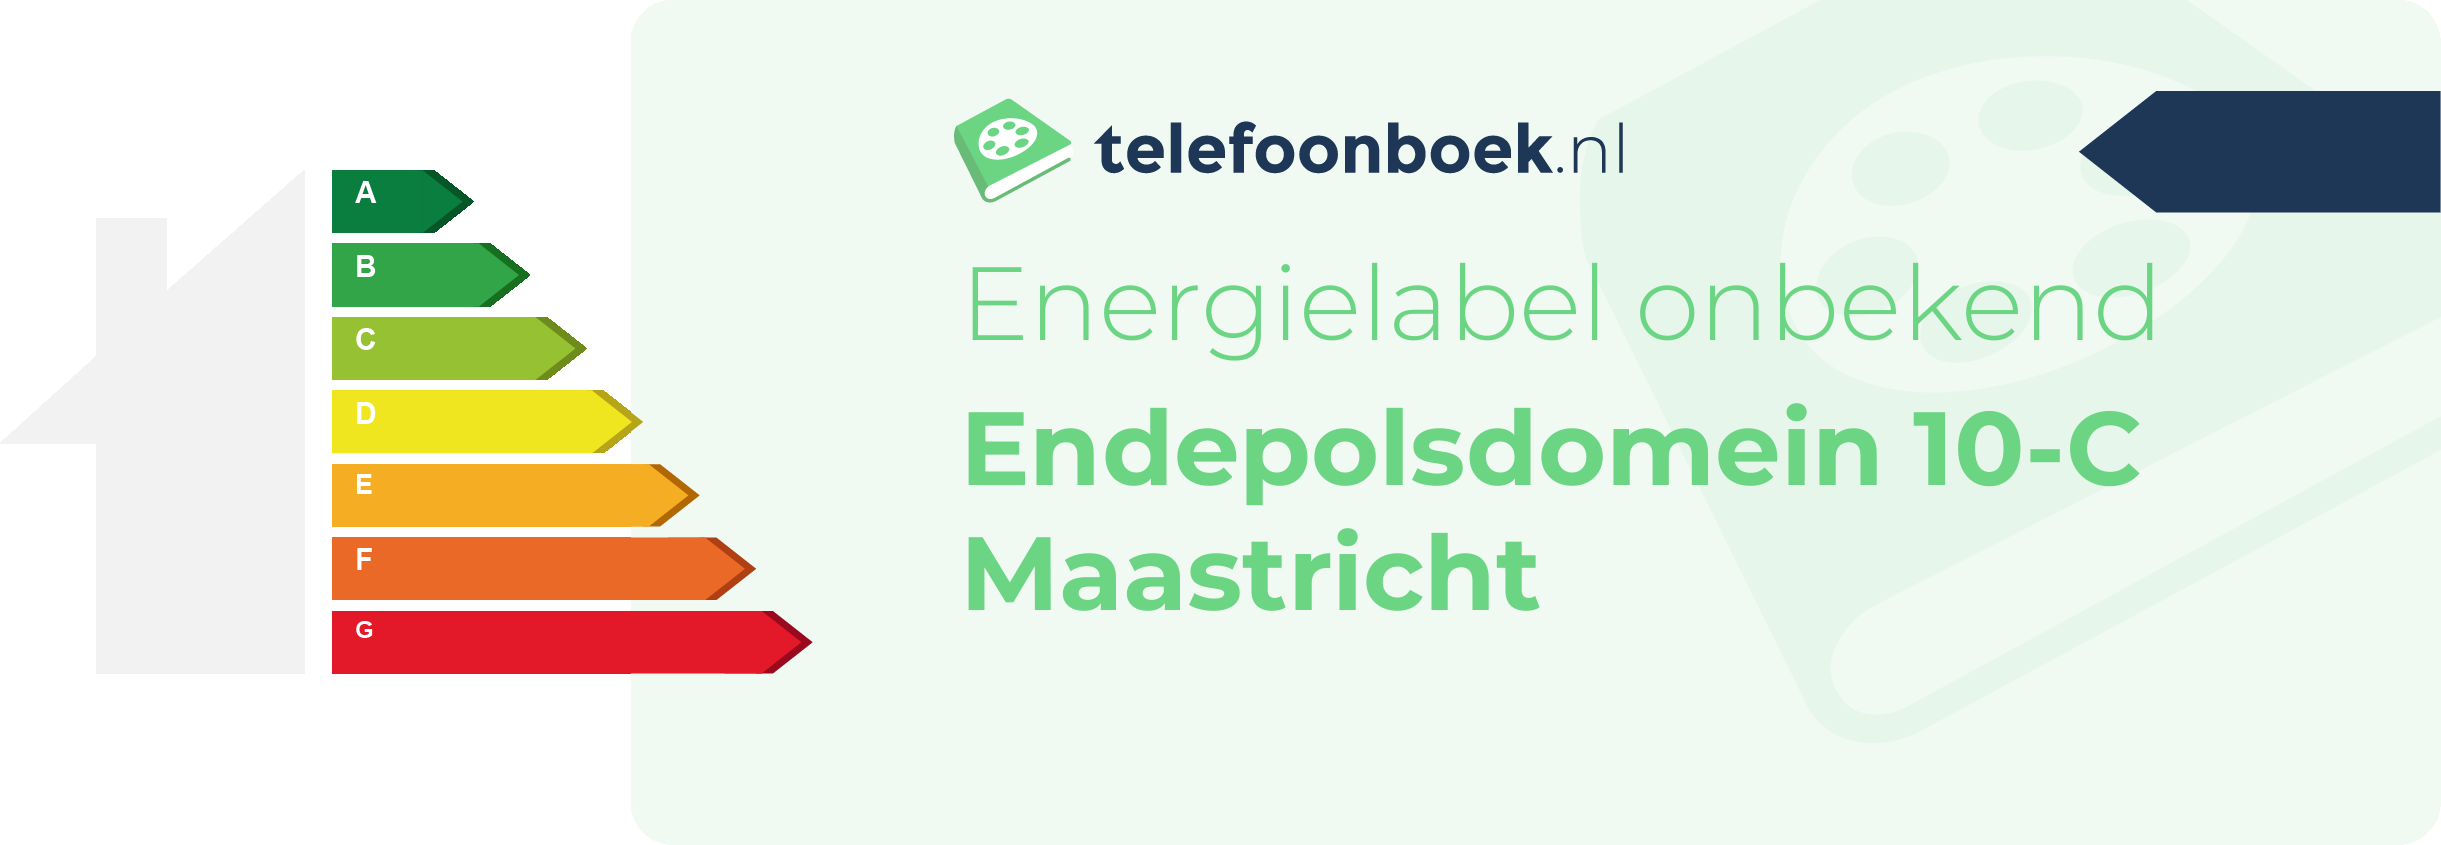 Energielabel Endepolsdomein 10-C Maastricht